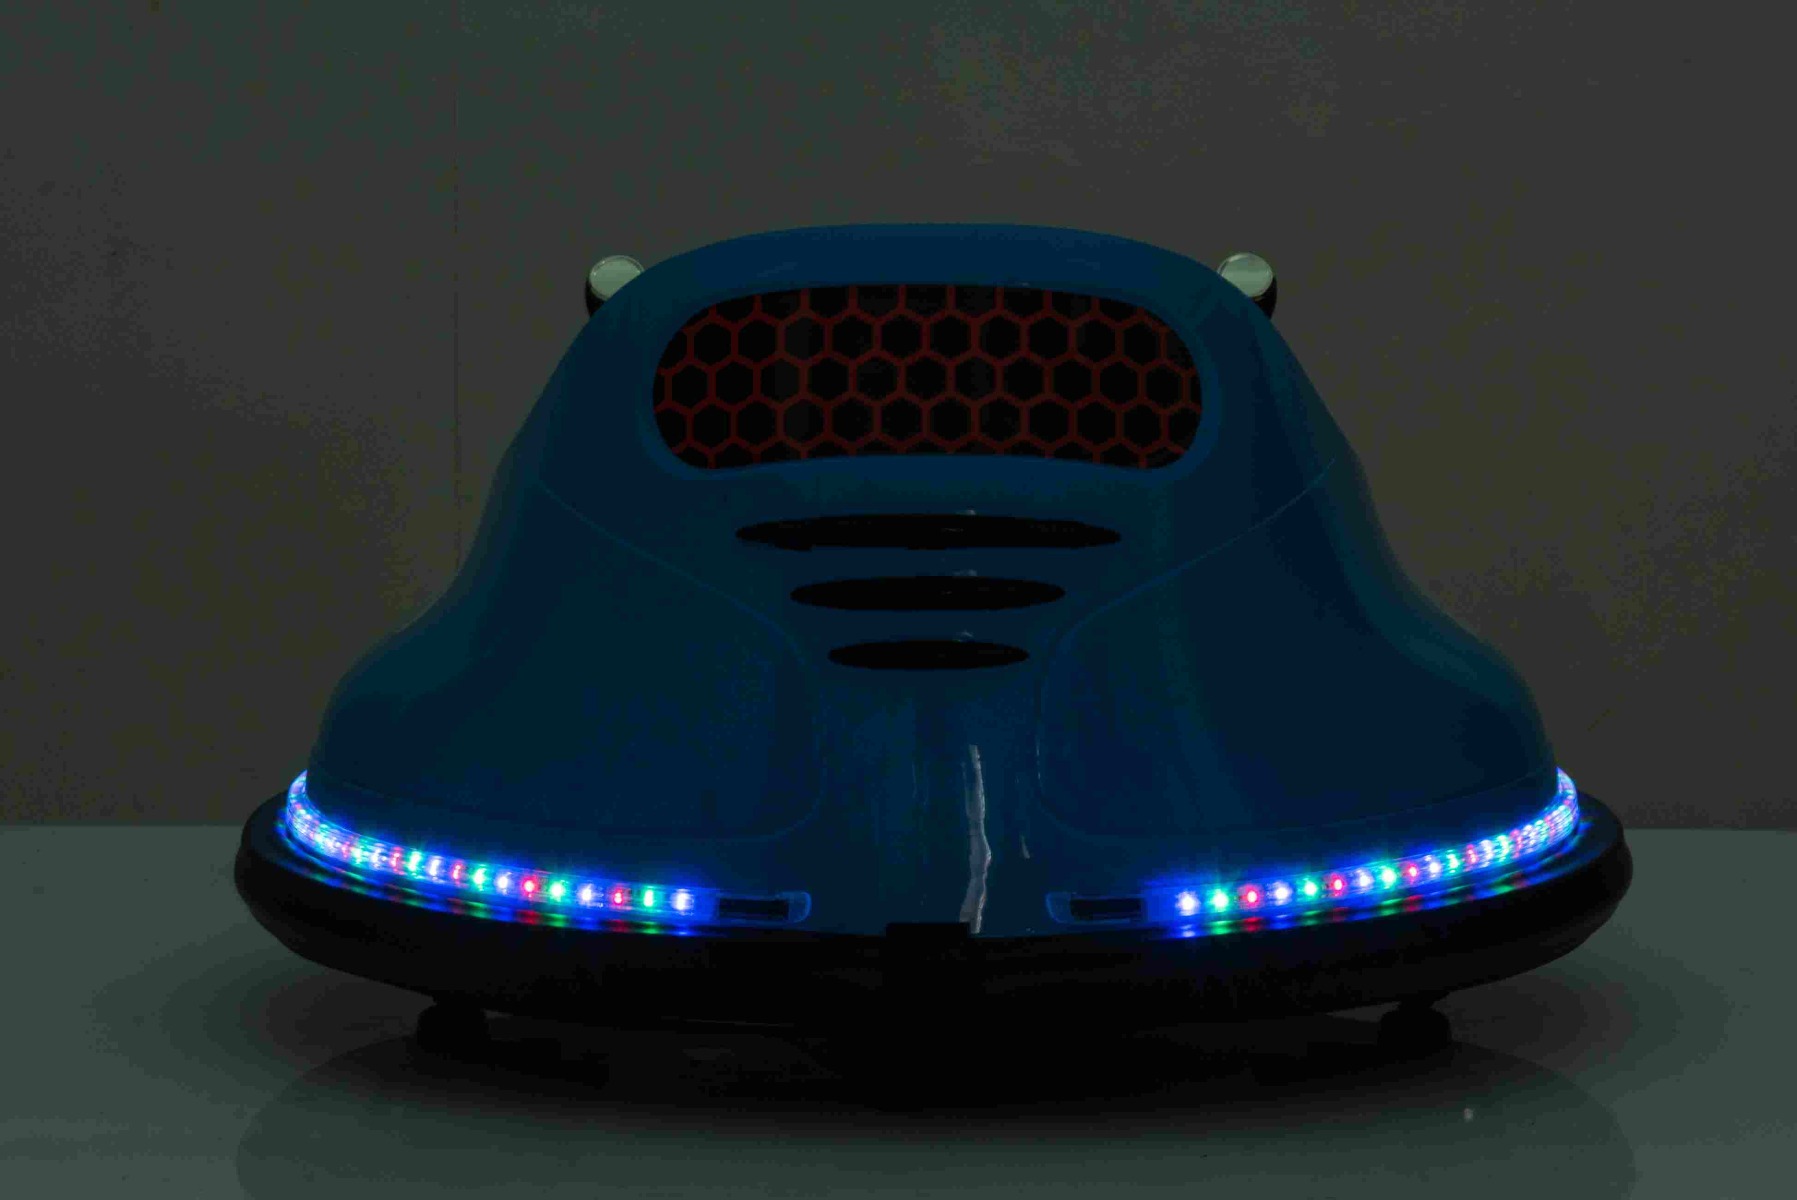 LED unter beleuchtetem Chassis